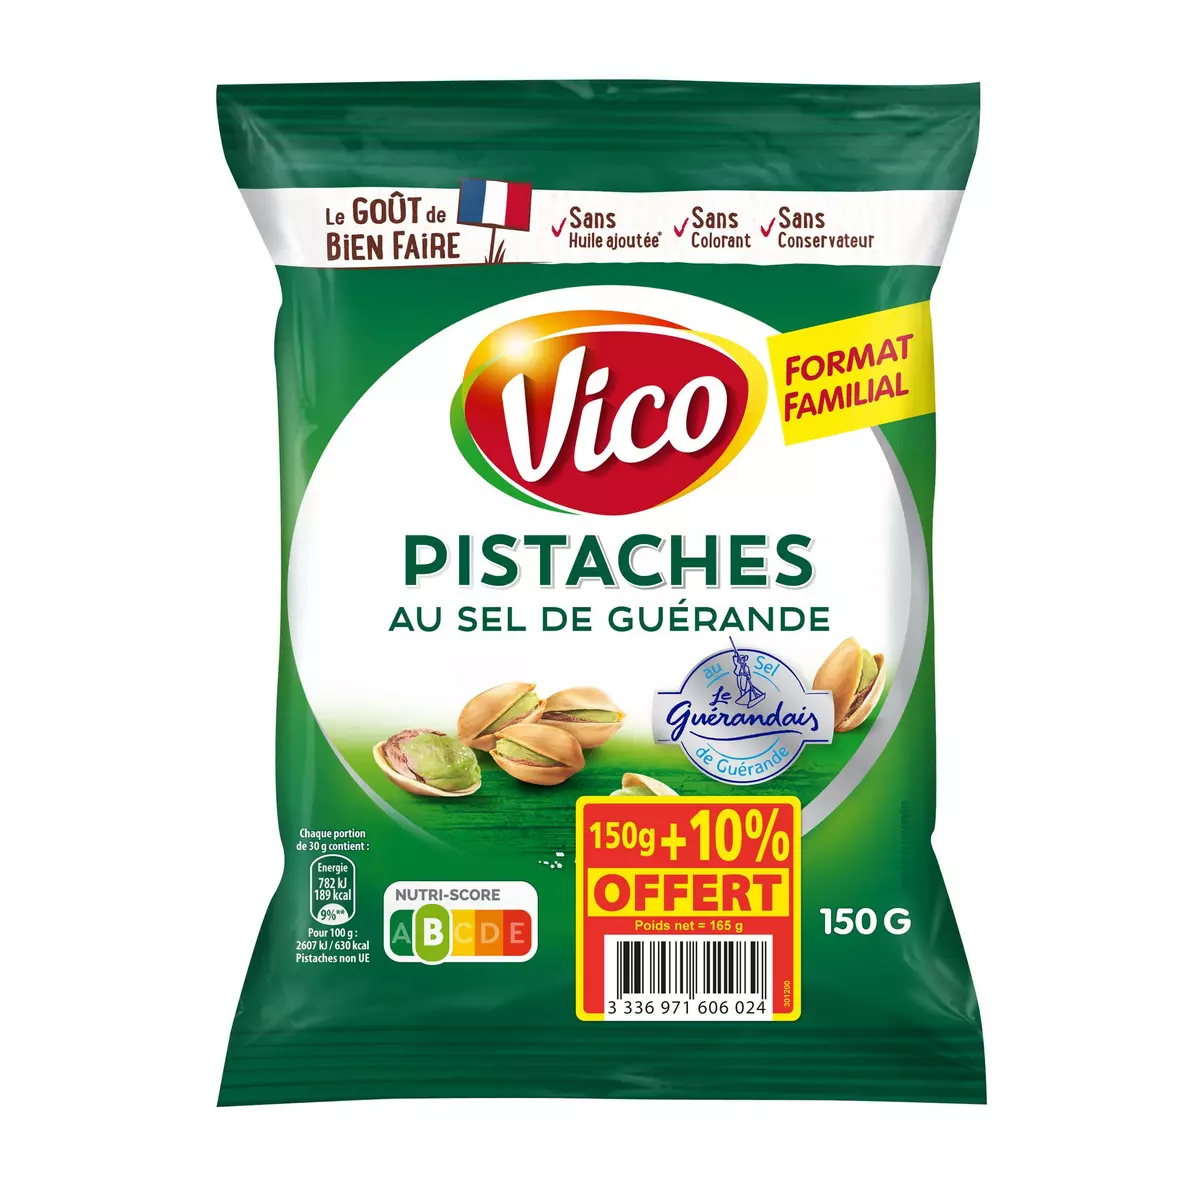 VICO Pistaches au sel de Guérande format familial 150g +10% offert